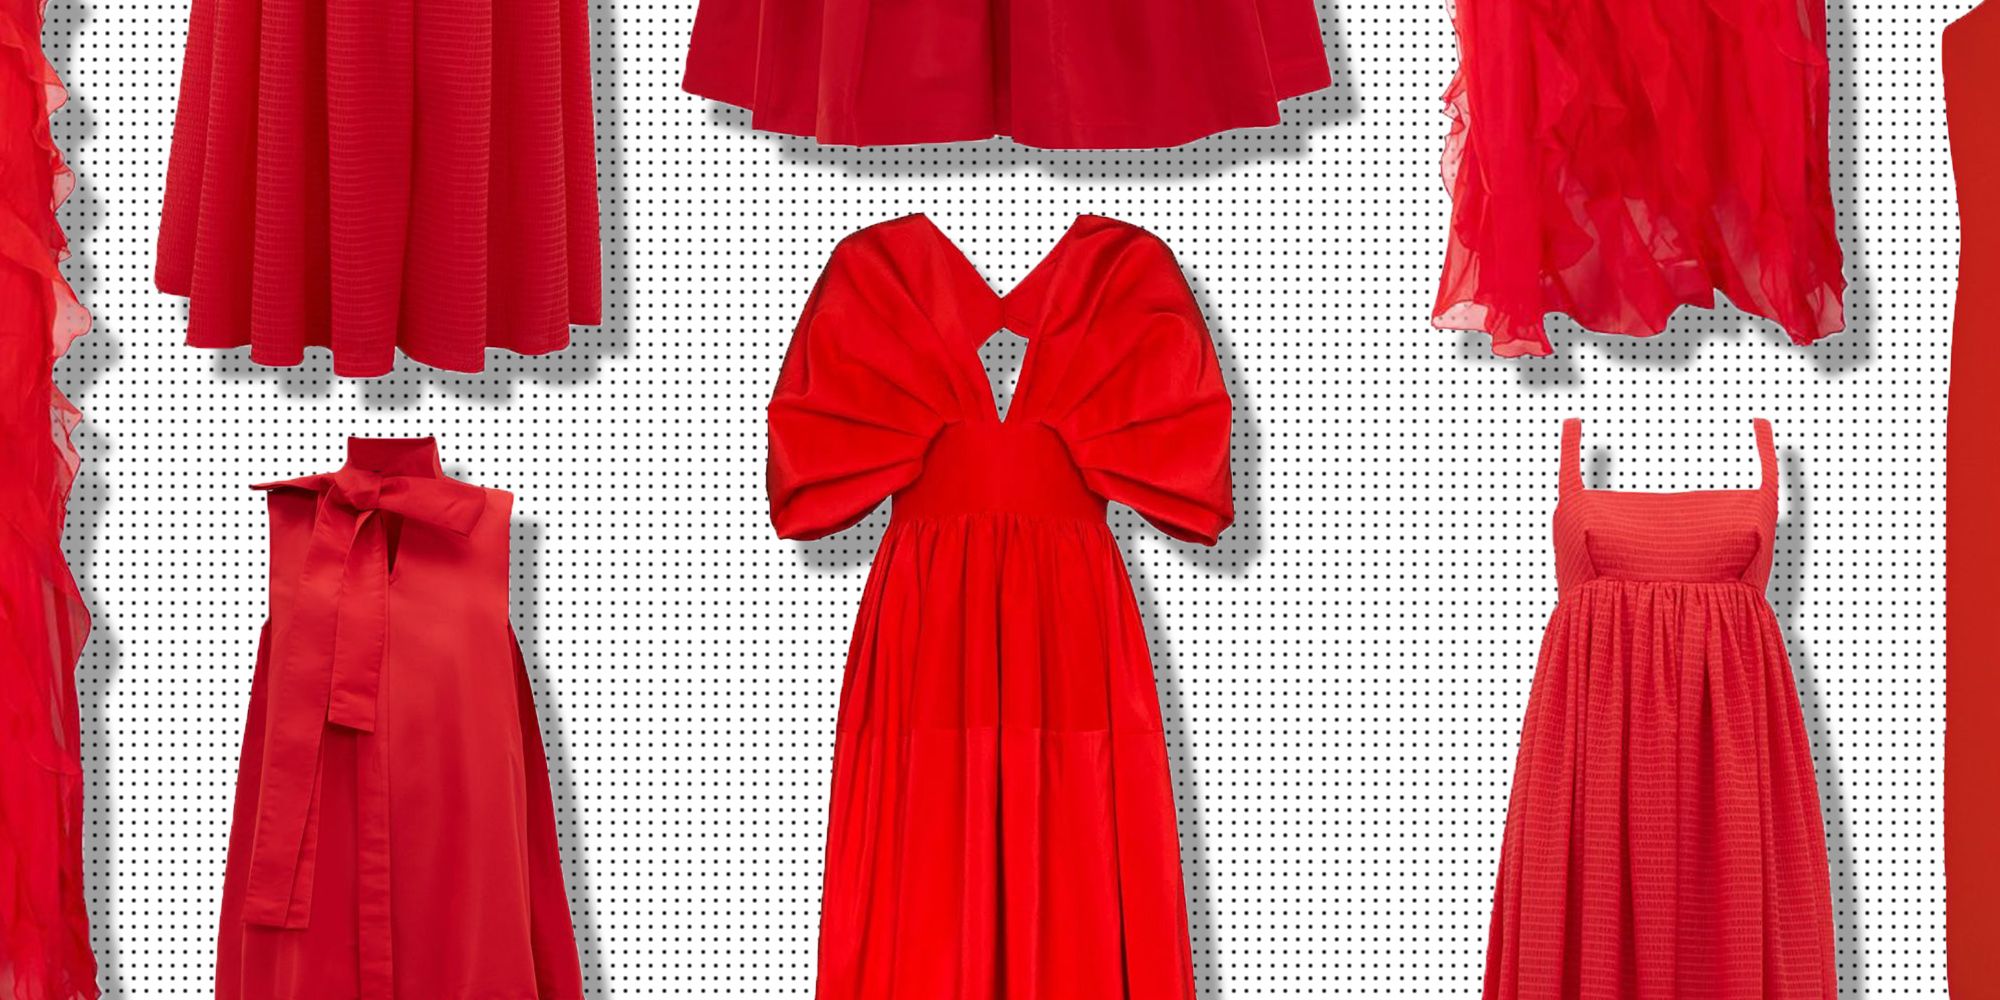 zara red dress with bow